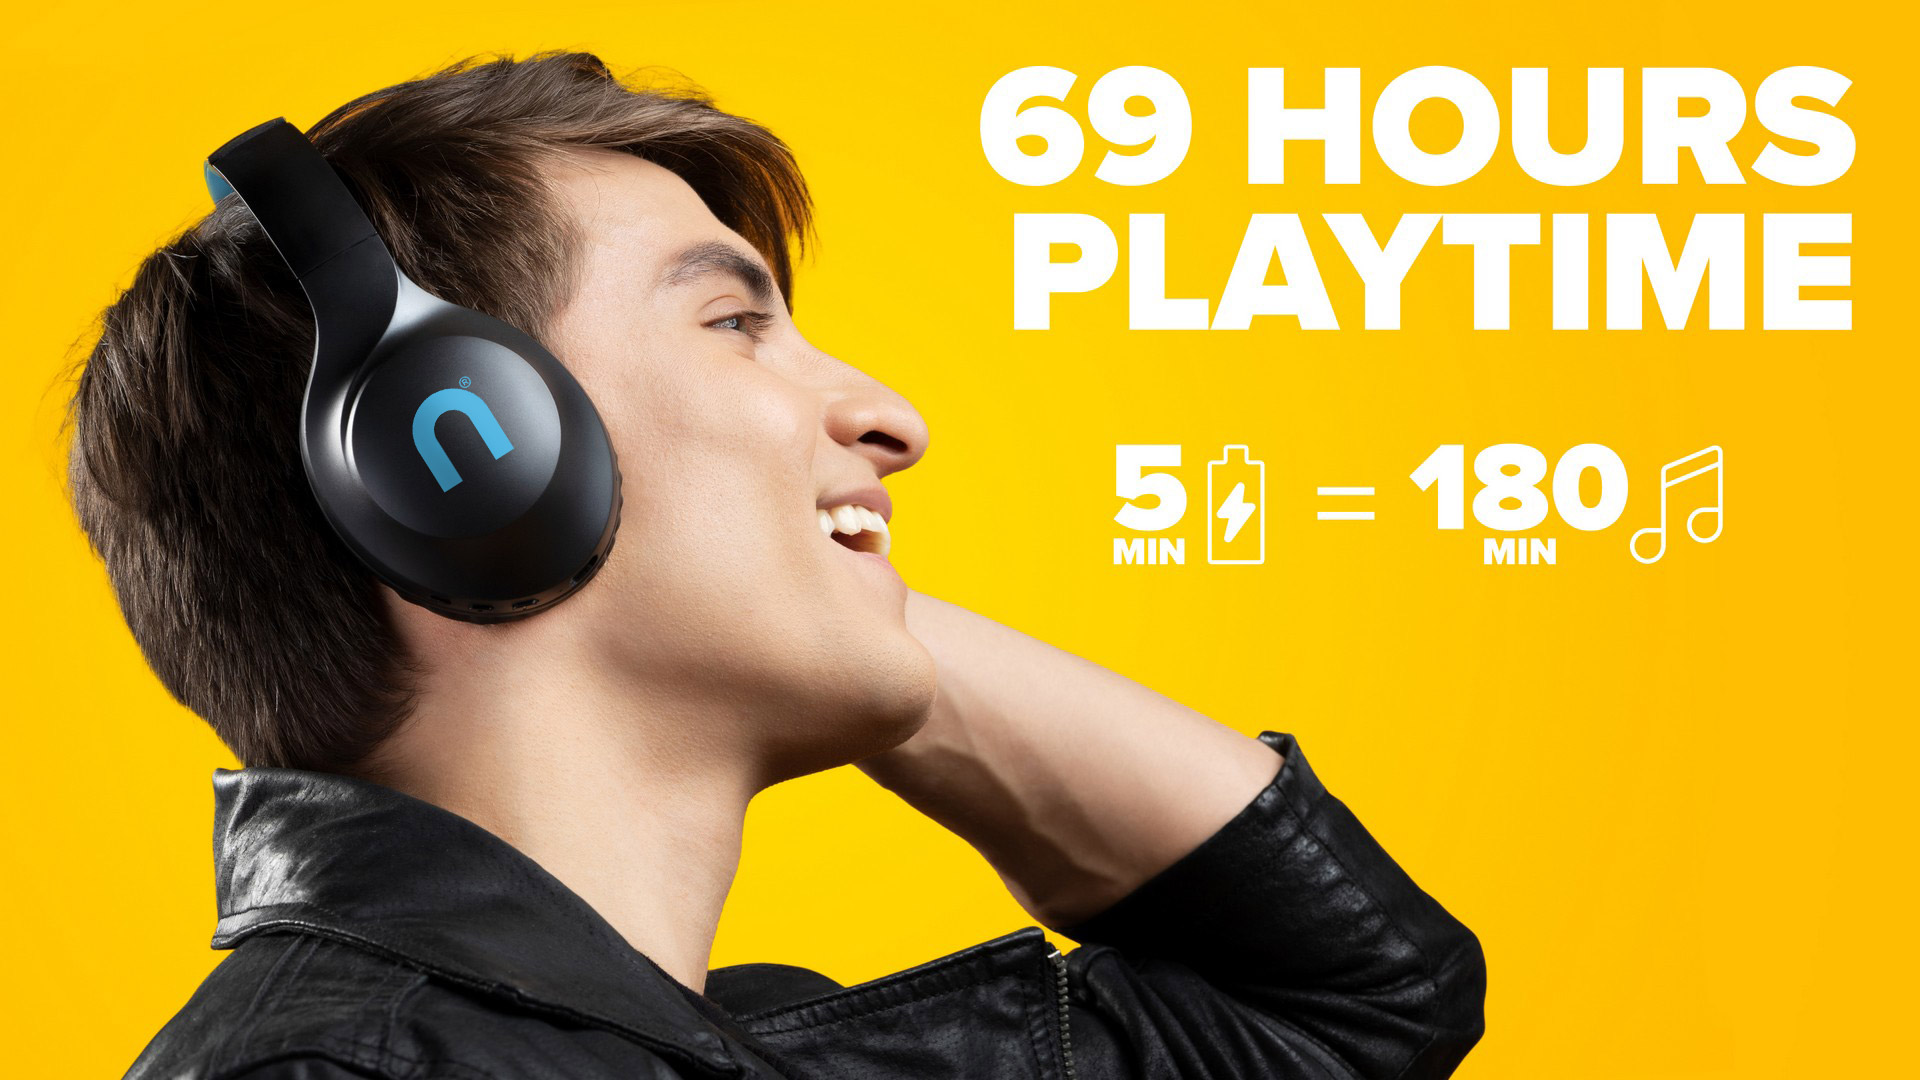 Bezdrátová cirkumaurální sluchátka Niceboy HIVE XL 3 vydrží hrát až 69 hodin v kuse, takže si můžete užívat oblíbený multimediální obsah doma i na cestách zcela bez omezení.